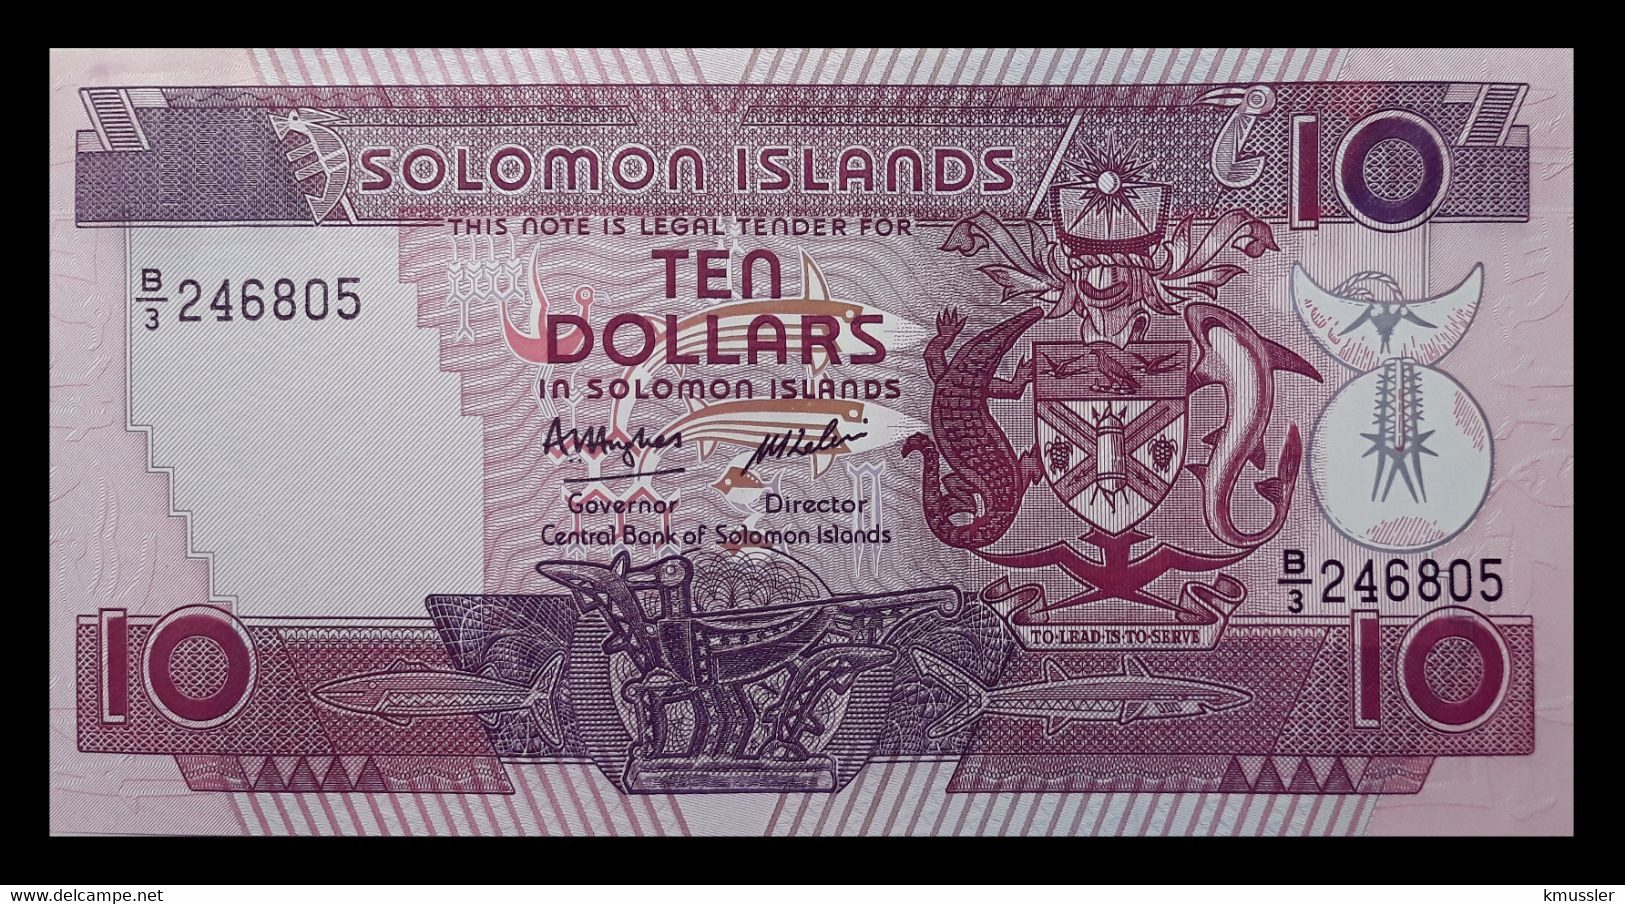 # # # Banknote Von Den Solomon-Inseln 10 Dollars UNC # # # - Solomonen